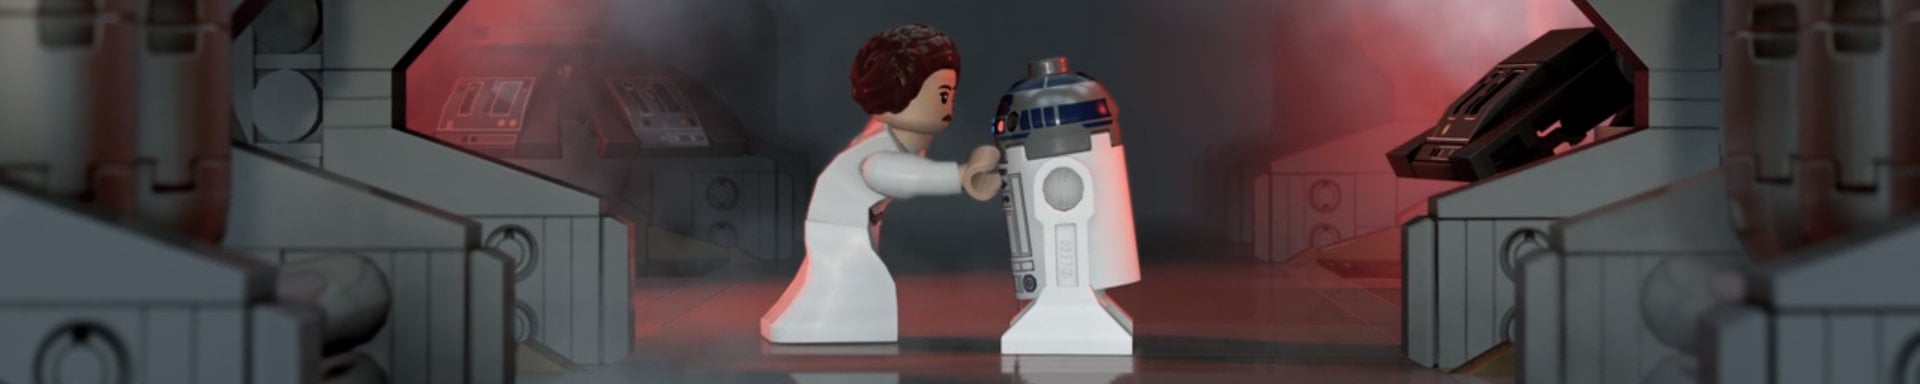 LEGO Star Wars The Skywalker Saga release date delayed slice